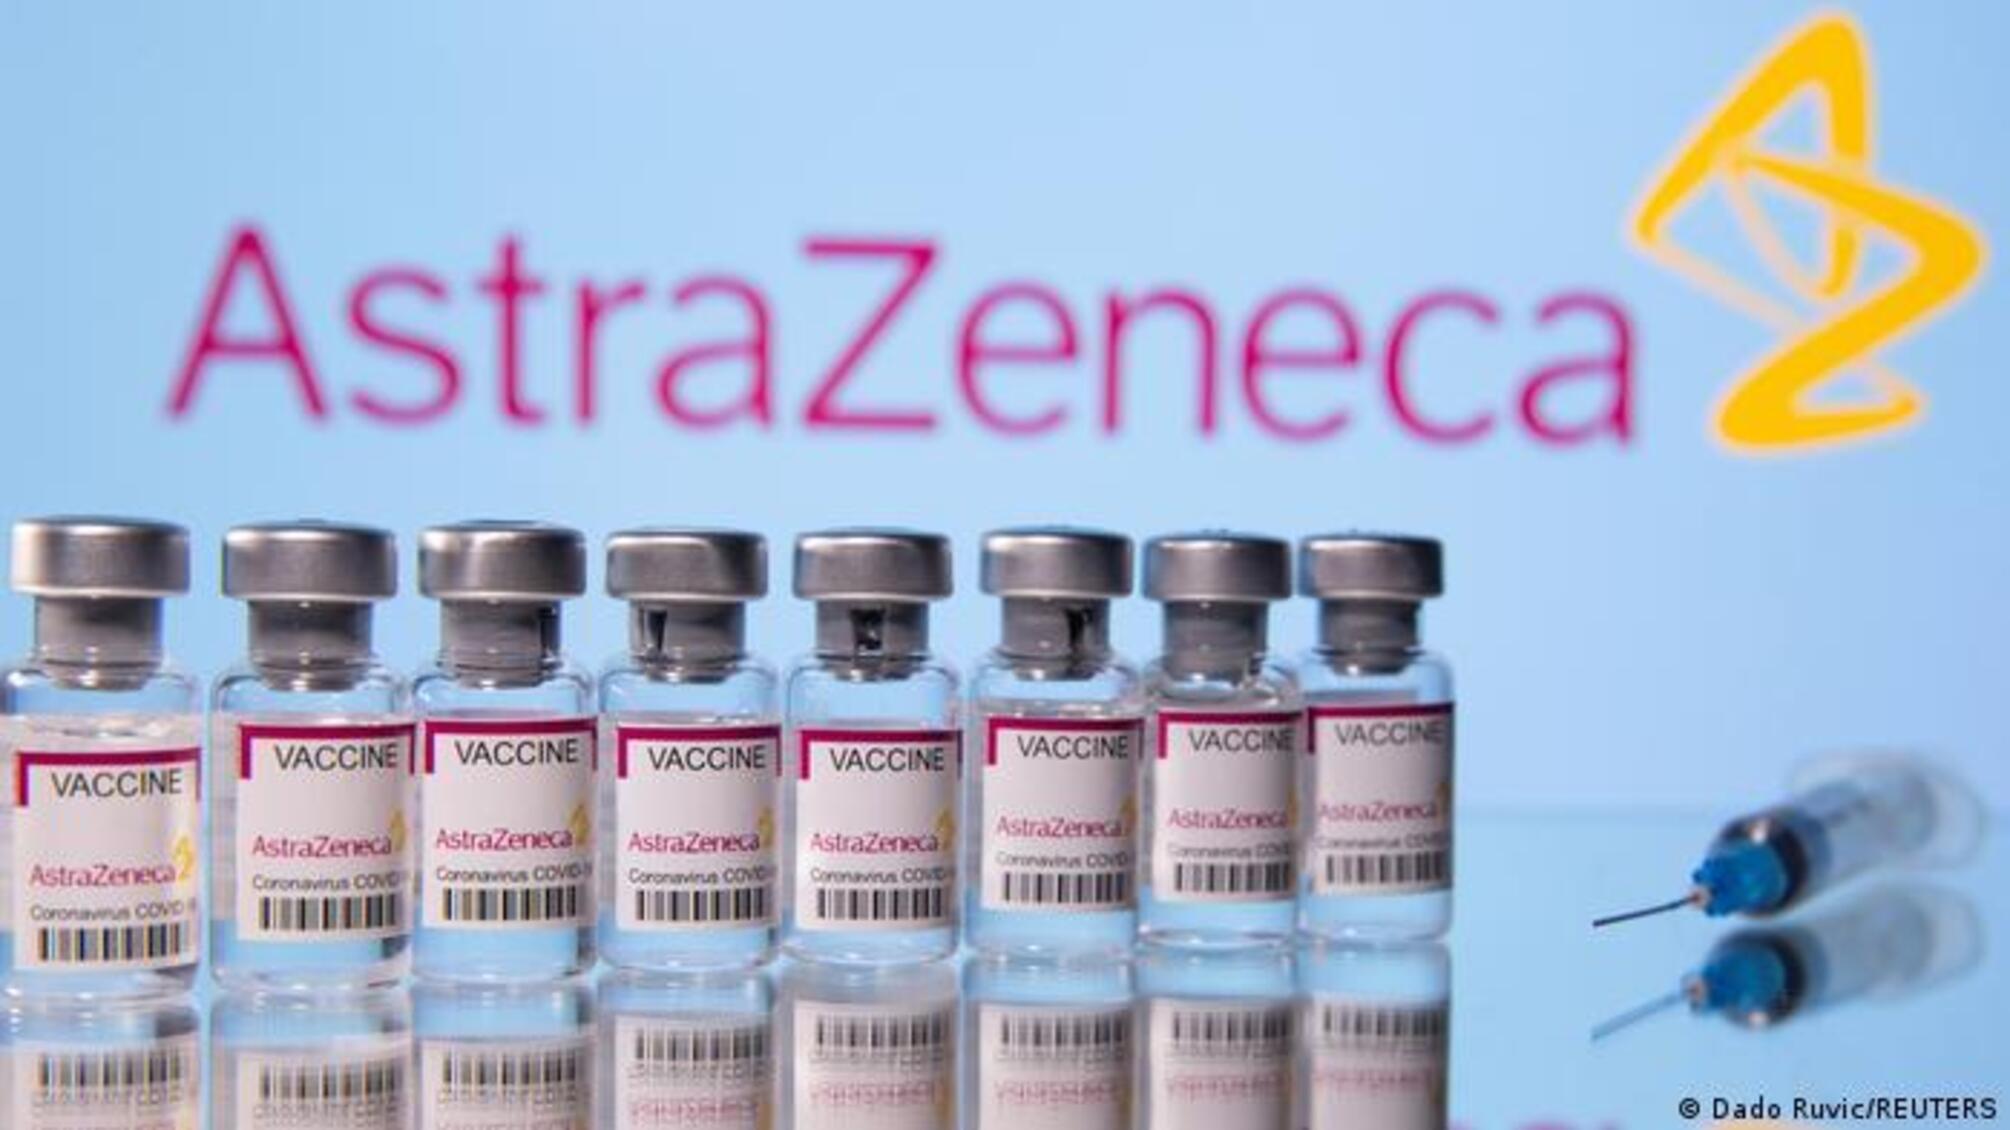 Вакцина AstraZeneca от COVID-19 имеет побочный эффект в виде тромбоза.